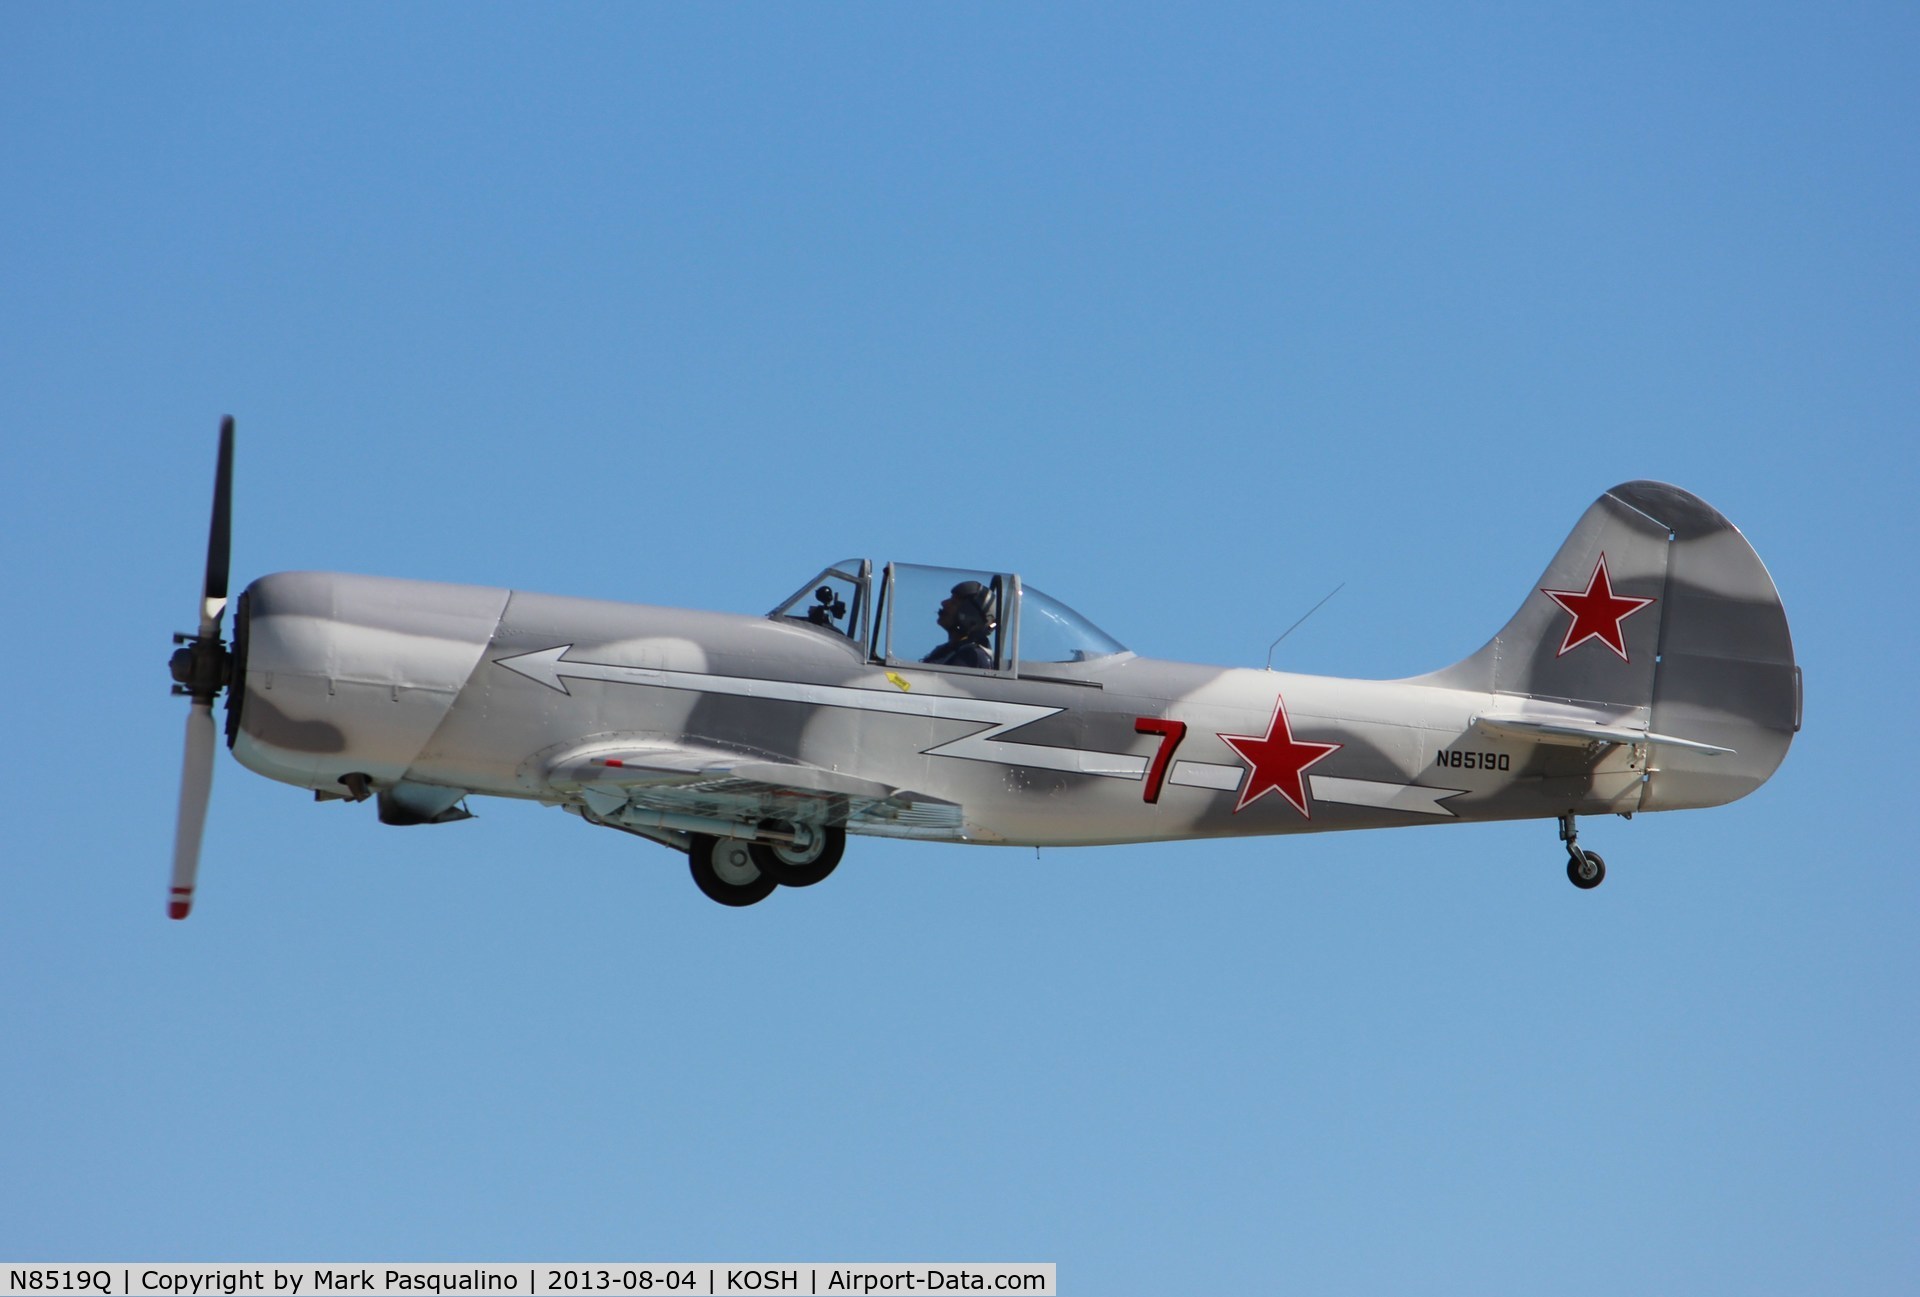 N8519Q, Yakovlev Yak-50 C/N 842707, YAK-50